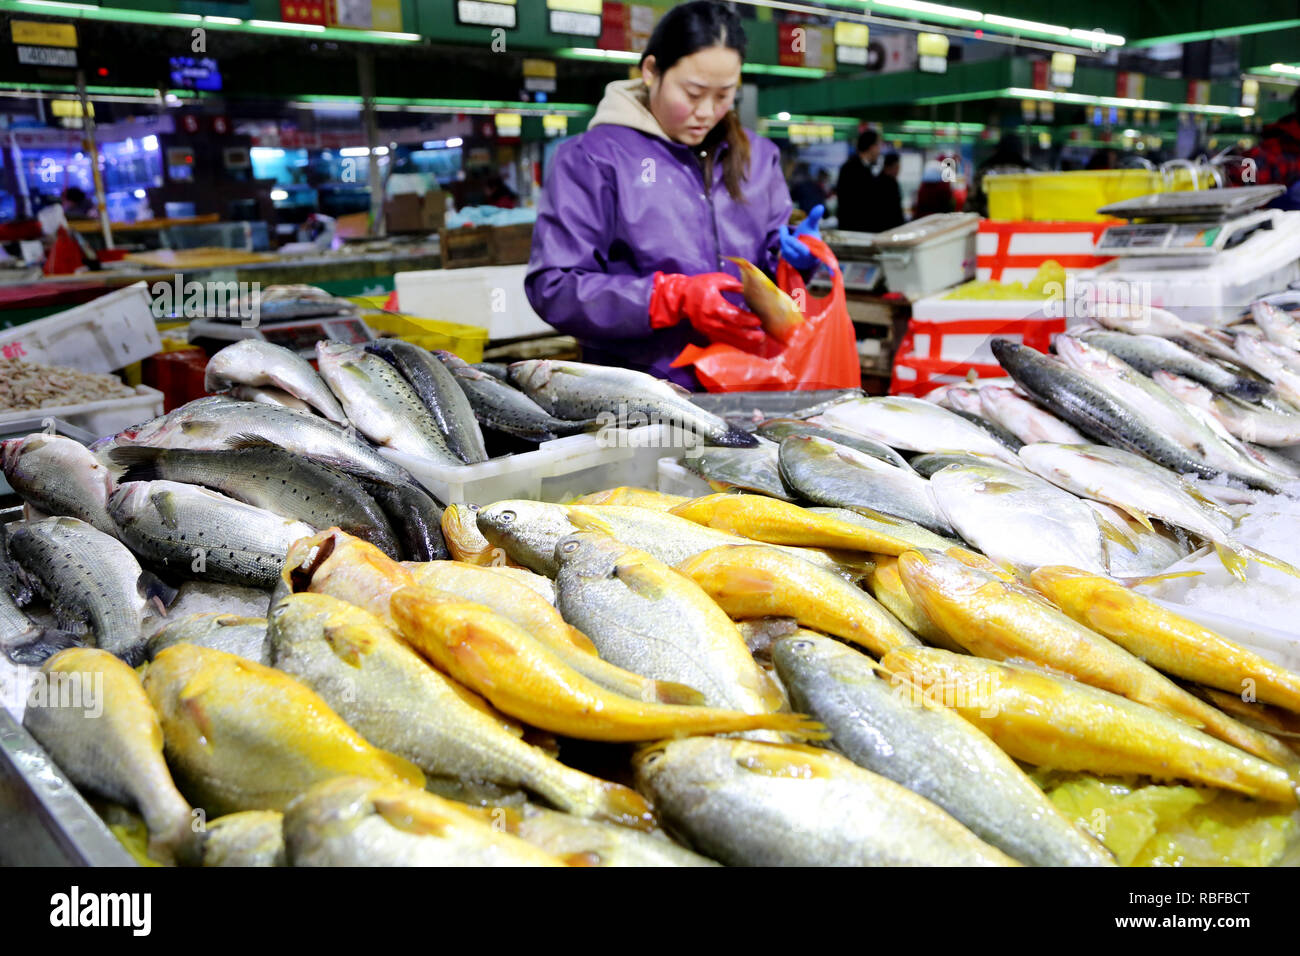 Lianyungang, cinese della provincia di Jiangsu. Decimo gen, 2019. Un vender organizza i frutti di mare in un mercato di Lianyungang, est cinese della provincia di Jiangsu, 10 gennaio, 2019. Della Cina di indice dei prezzi al consumo (IPC), un indicatore principale di inflazione, rose 1.9 per cento anno su anno in dicembre, giù dal 2,2 per cento per il mese di novembre, l'Ufficio nazionale di statistica ha detto giovedì. Credito: Wang Chun/Xinhua/Alamy Live News Foto Stock